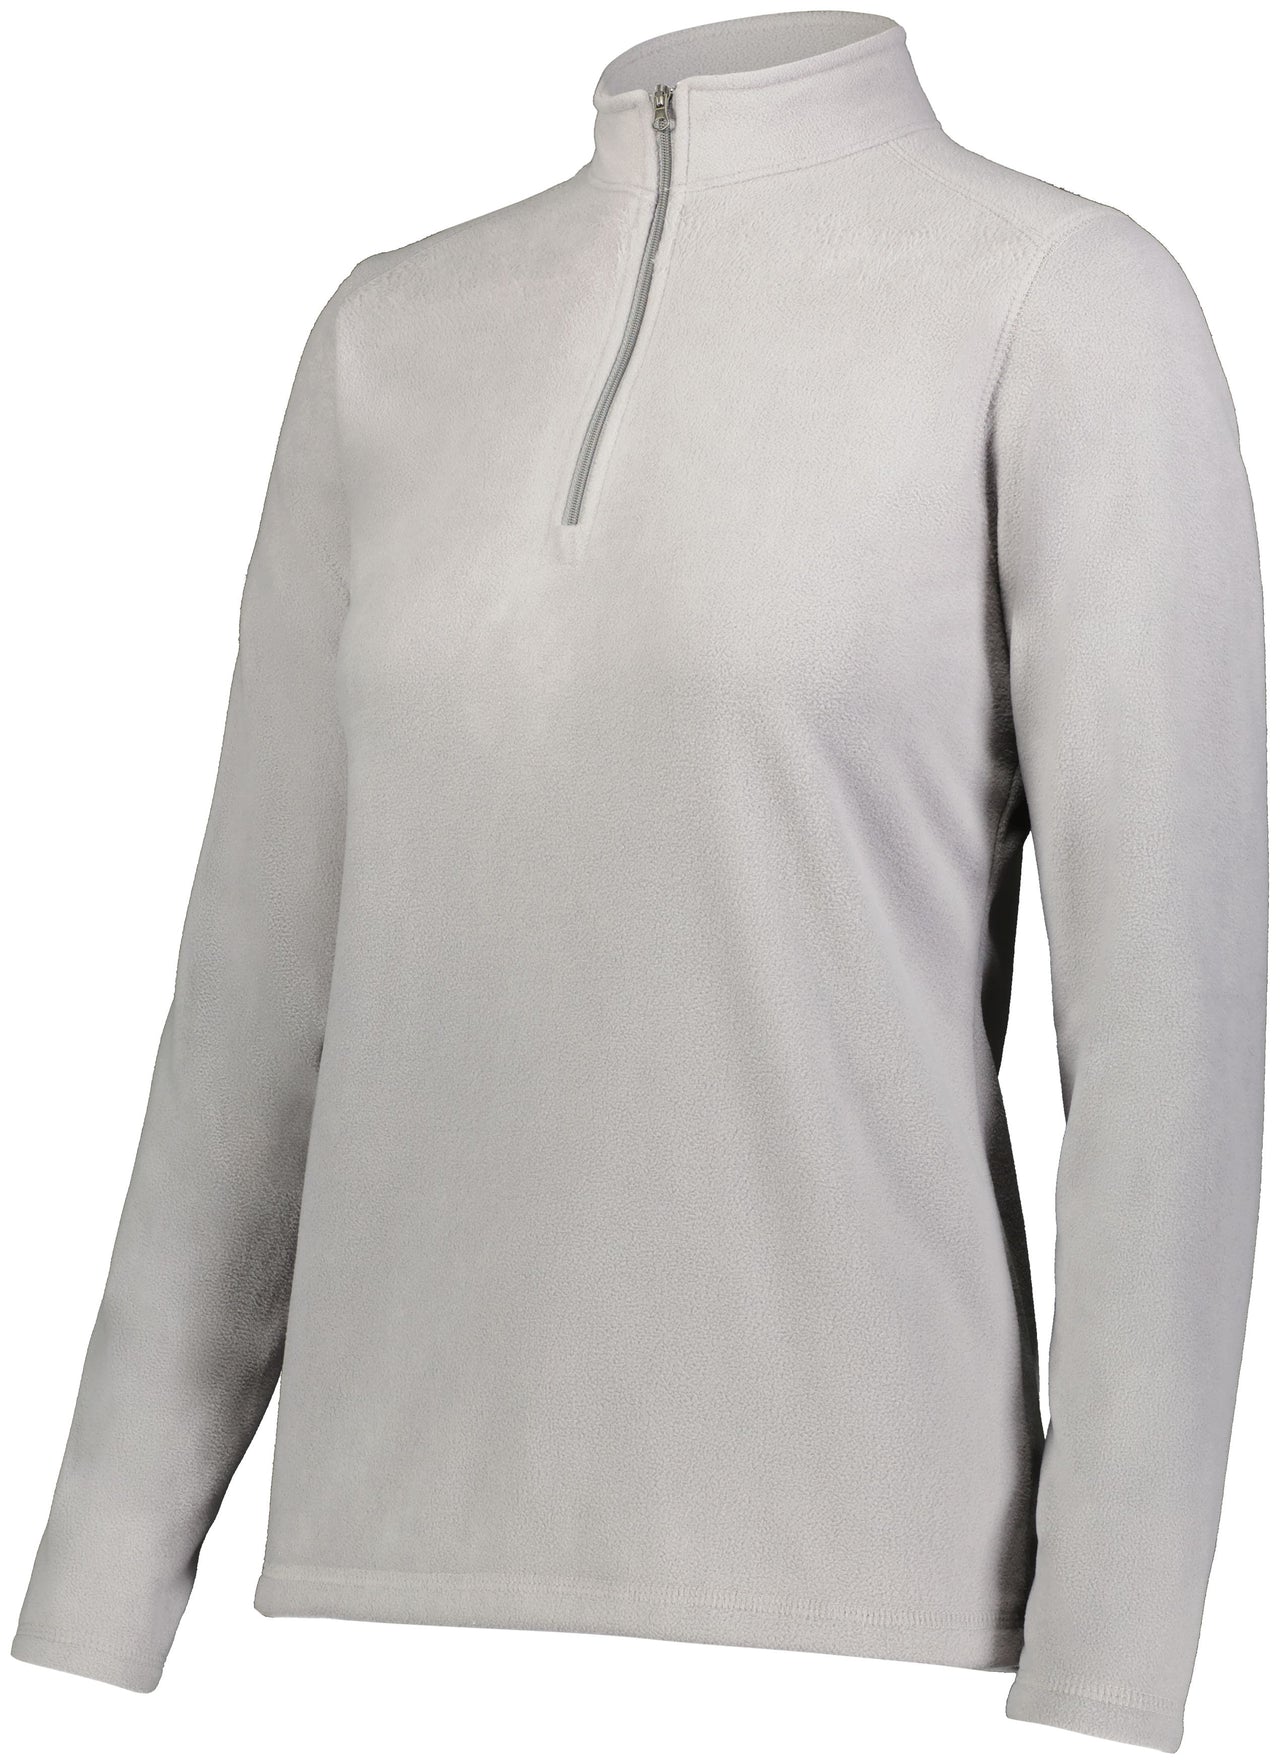 Ladies Micro-Lite Fleece 1/4 Zip Pullover - 6864